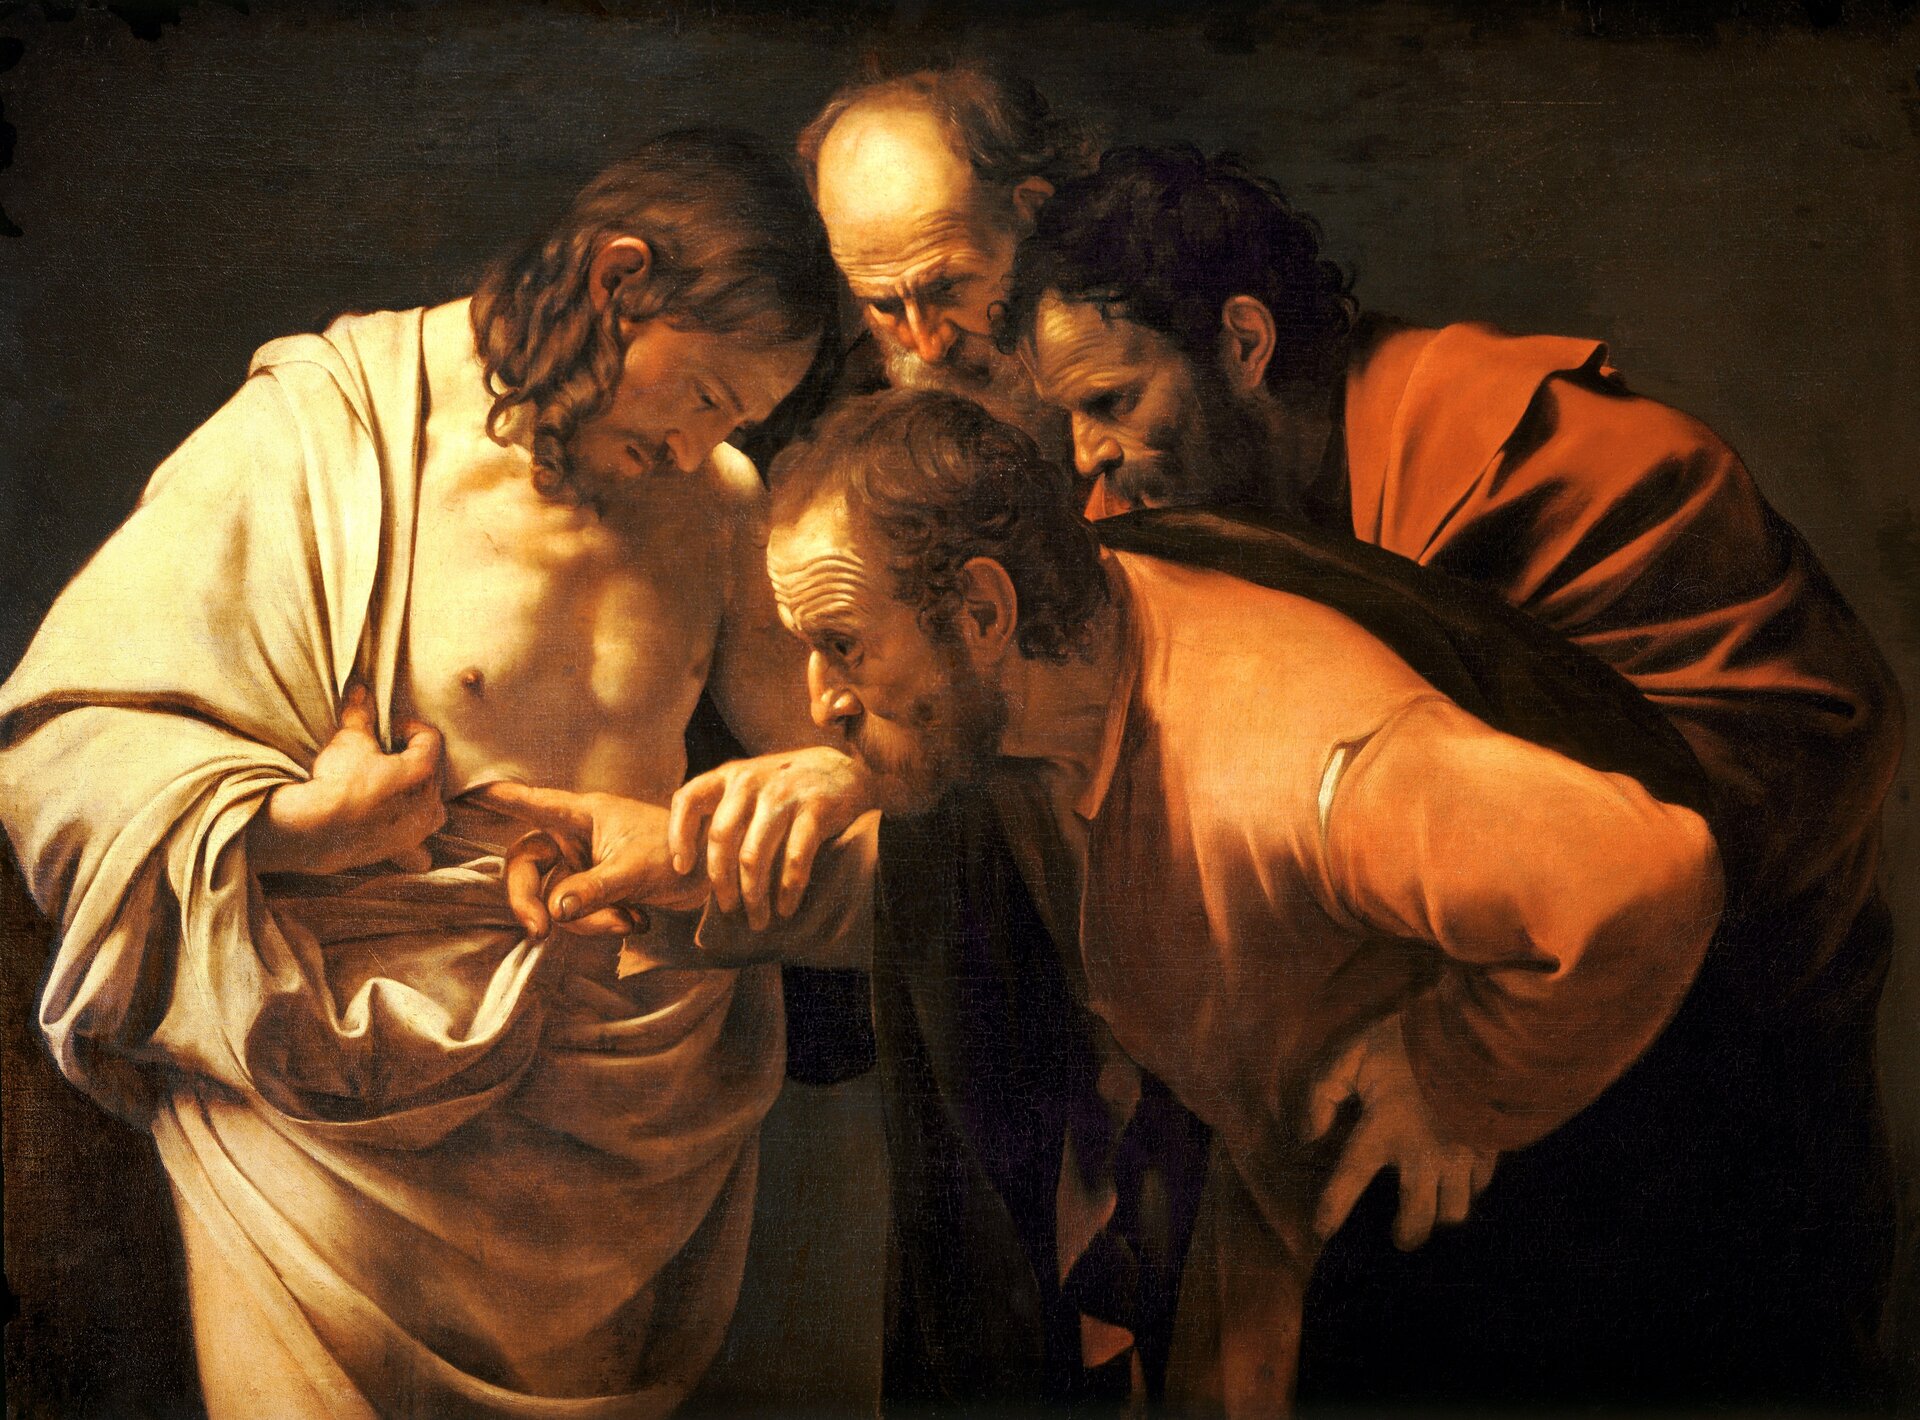 Ilustracja przedstawia obraz Caravaggia „Niewierny Tomasz”. Ukazuje apostoła wkładającego palec do rany Jezusa. Obok dwóch mężczyzn się im przygląda.